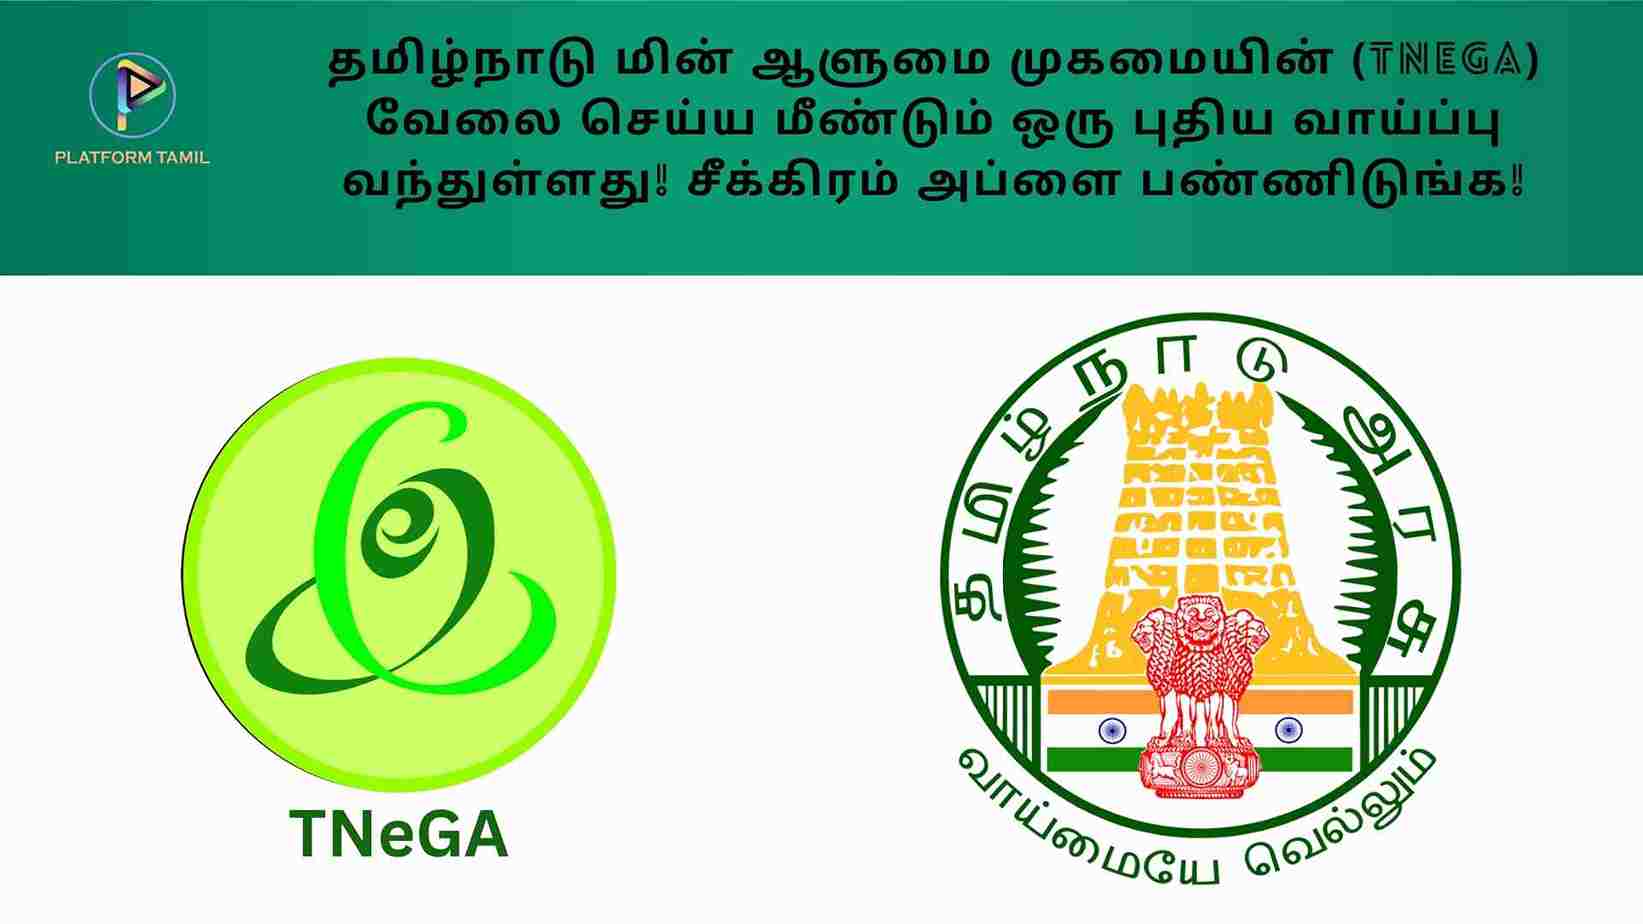 TNEGA Job Vacancy - Platform Tamil